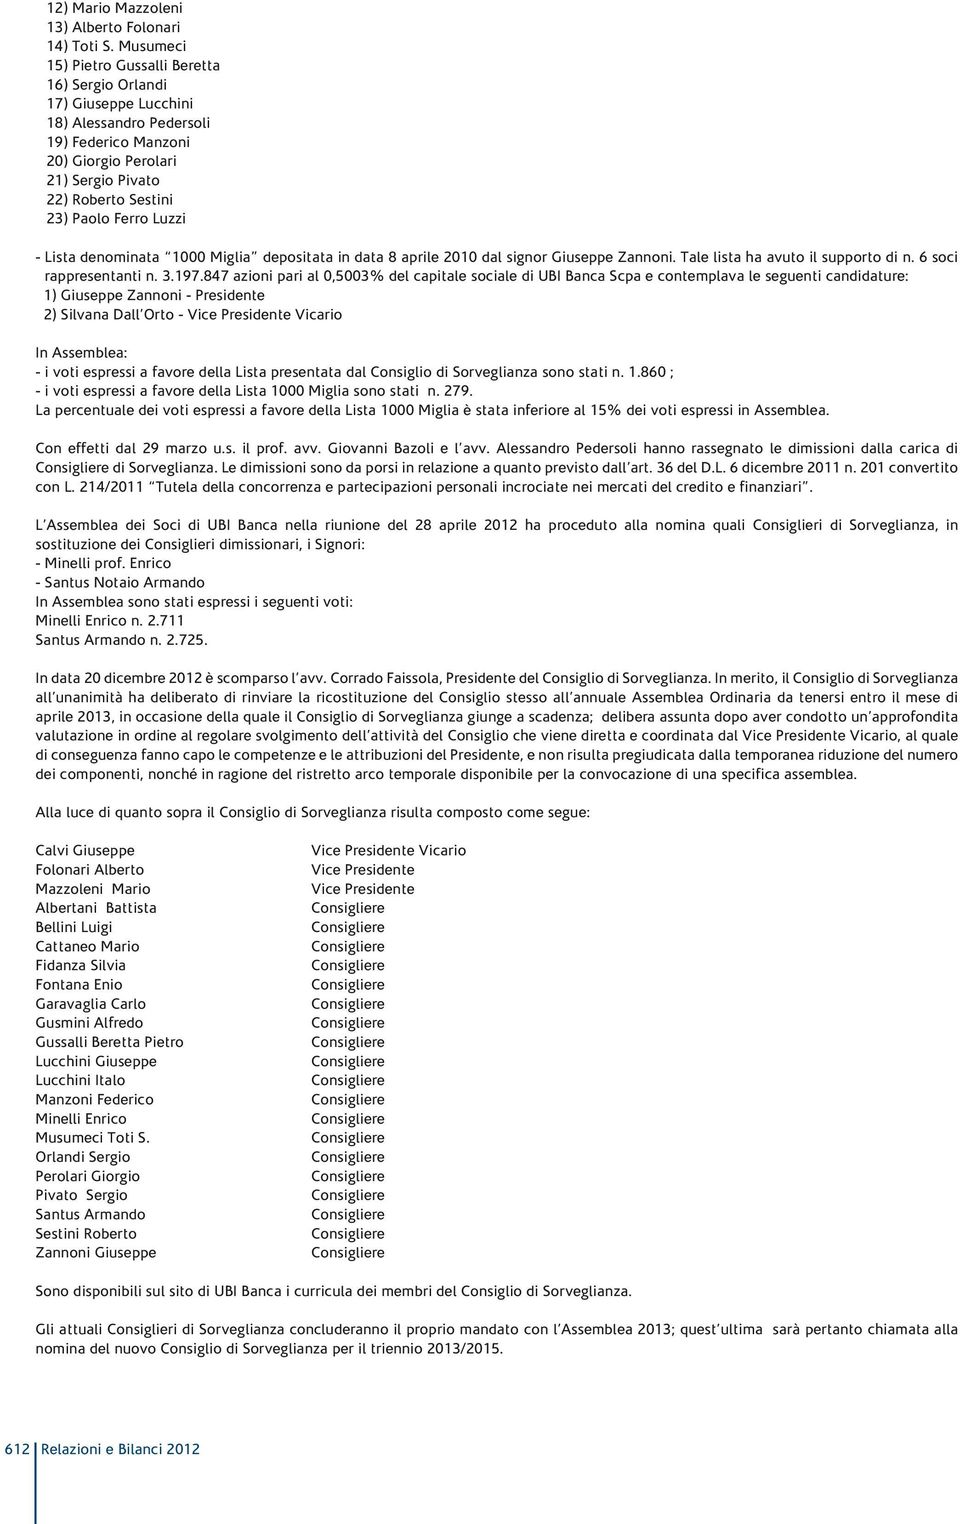 Luzzi - Lista denominata 1000 Miglia depositata in data 8 aprile 2010 dal signor Giuseppe Zannoni. Tale lista ha avuto il supporto di n. 6 soci rappresentanti n. 3.197.